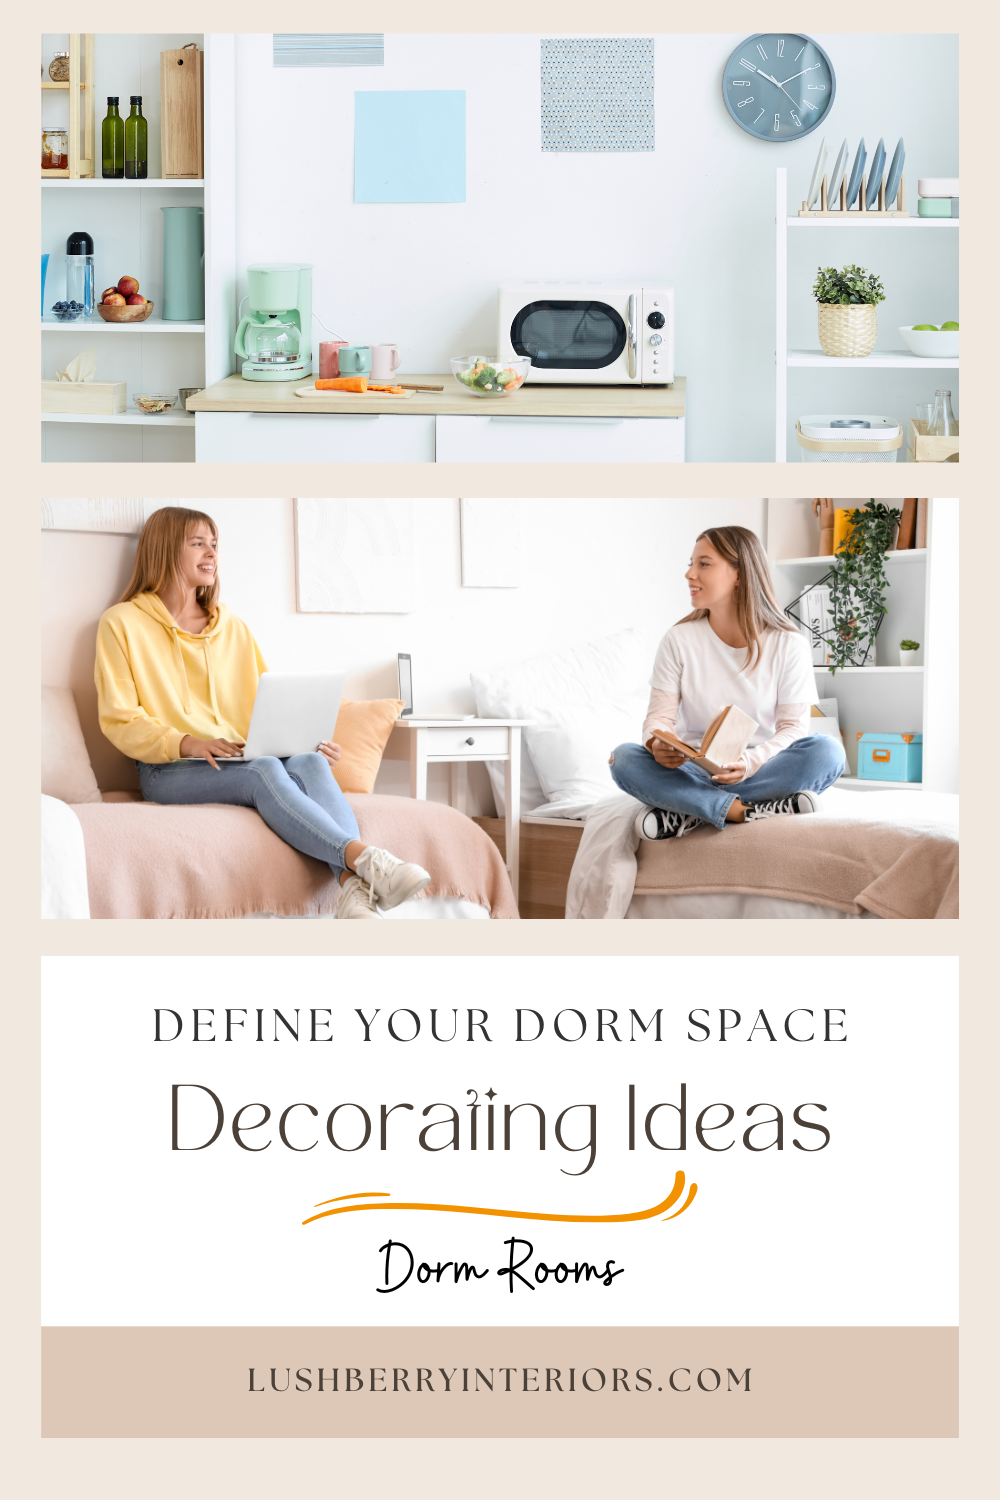 Dorm Room Basics - Understanding College Dorm Life